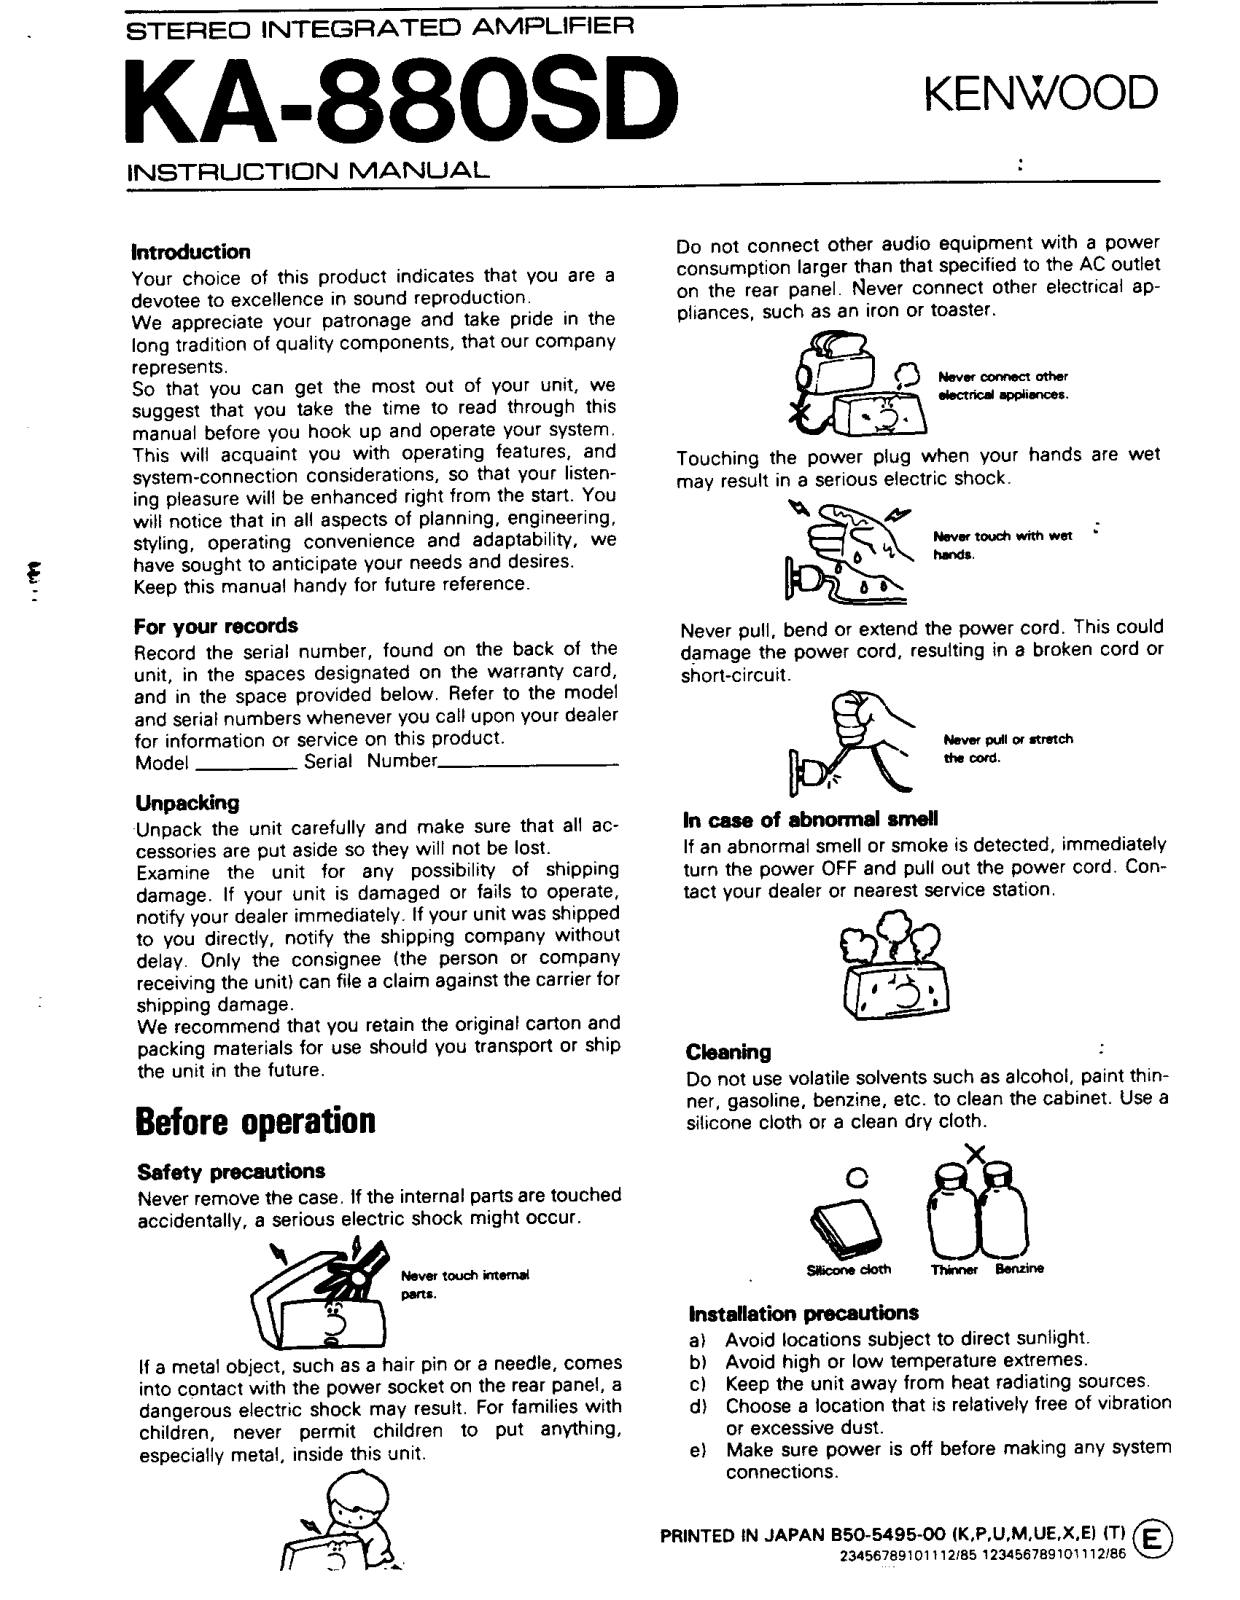 Kenwood KA-880SD Owner's Manual